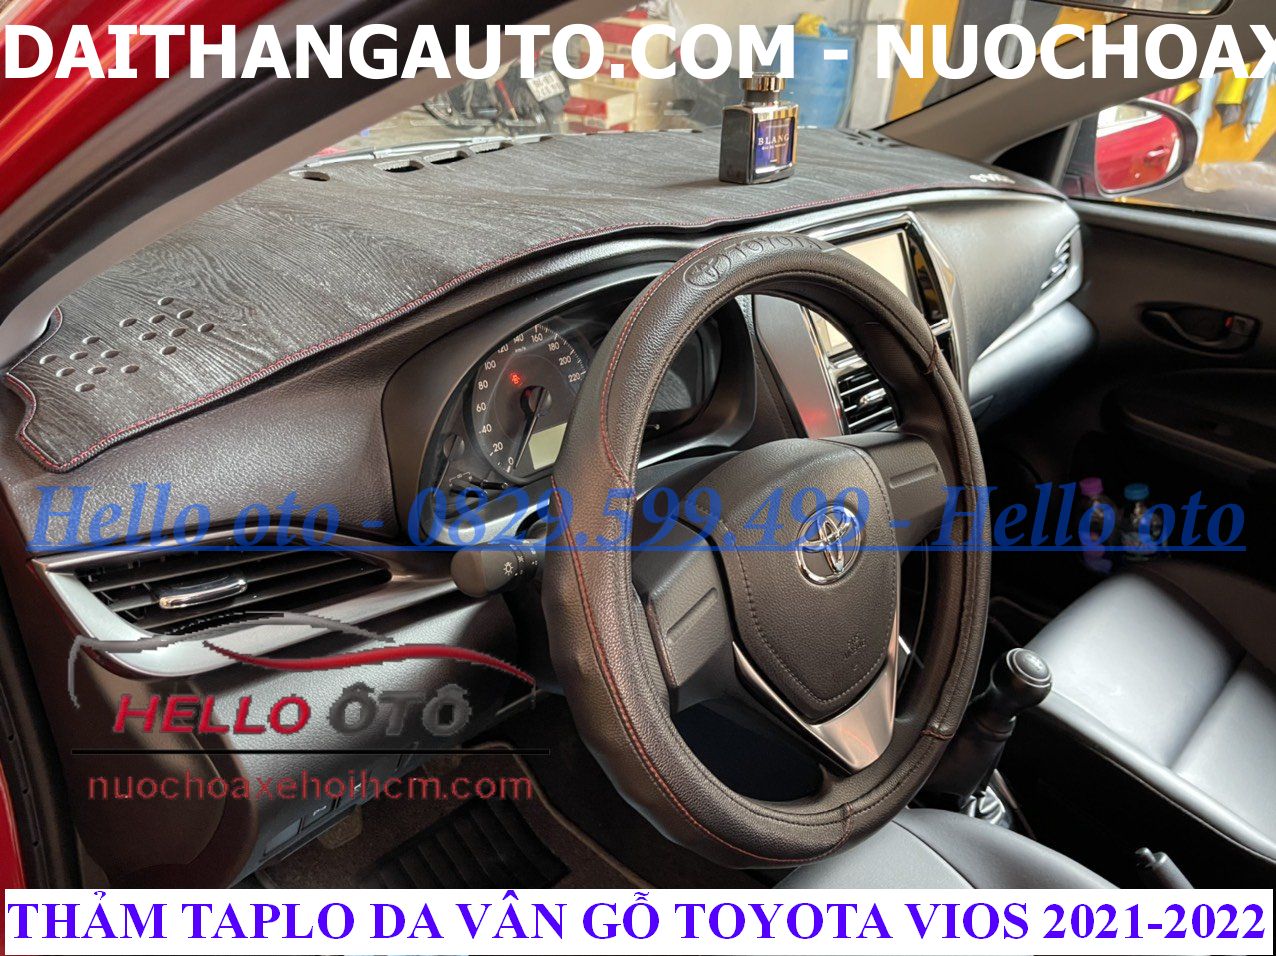 Thảm Taplo Da Vân Gỗ Chống Nắng Toyota Vios 2021-2022